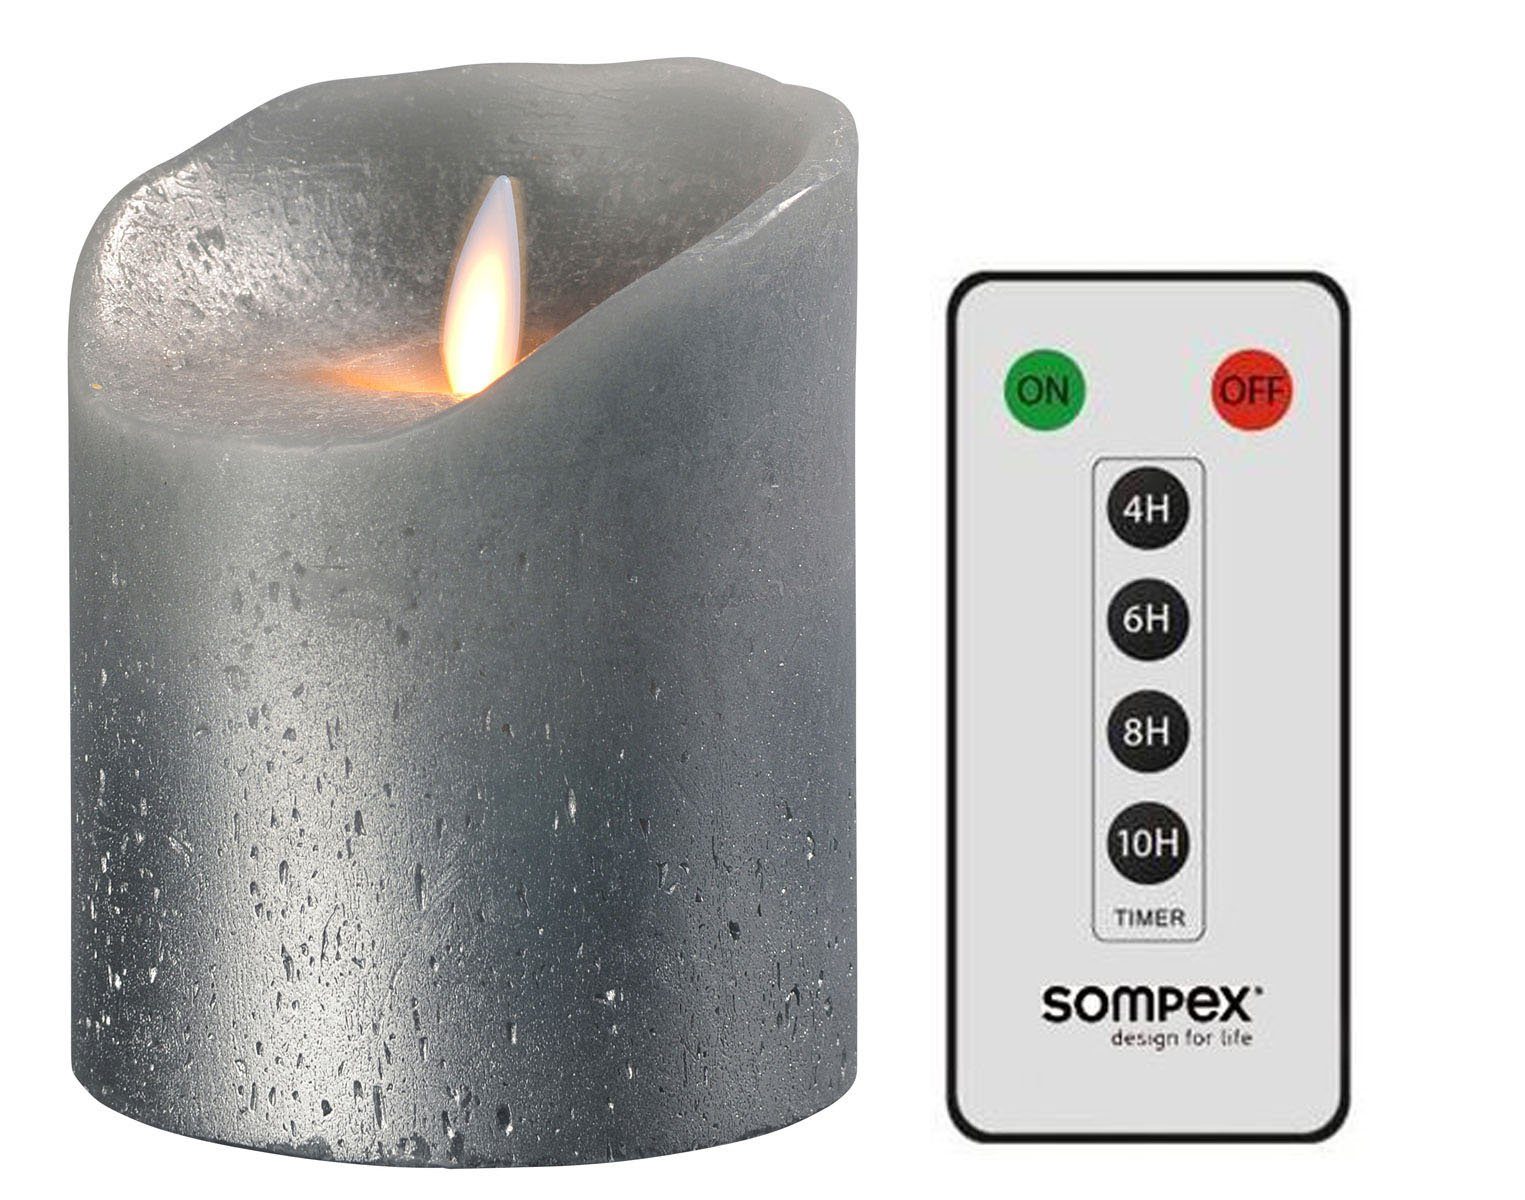 SOMPEX LED-Kerze Set Sompex Flame LED Echtwachskerze grau metallic (Set,  2-tlg., 1 Kerze, Höhe 10cm, Durchmesser 8cm, 1 Fernbedienung),  fernbedienbar, integrierter Timer, Echtwachs, täuschend echtes Kerzenlicht,  optimales Set für den Adventskranz